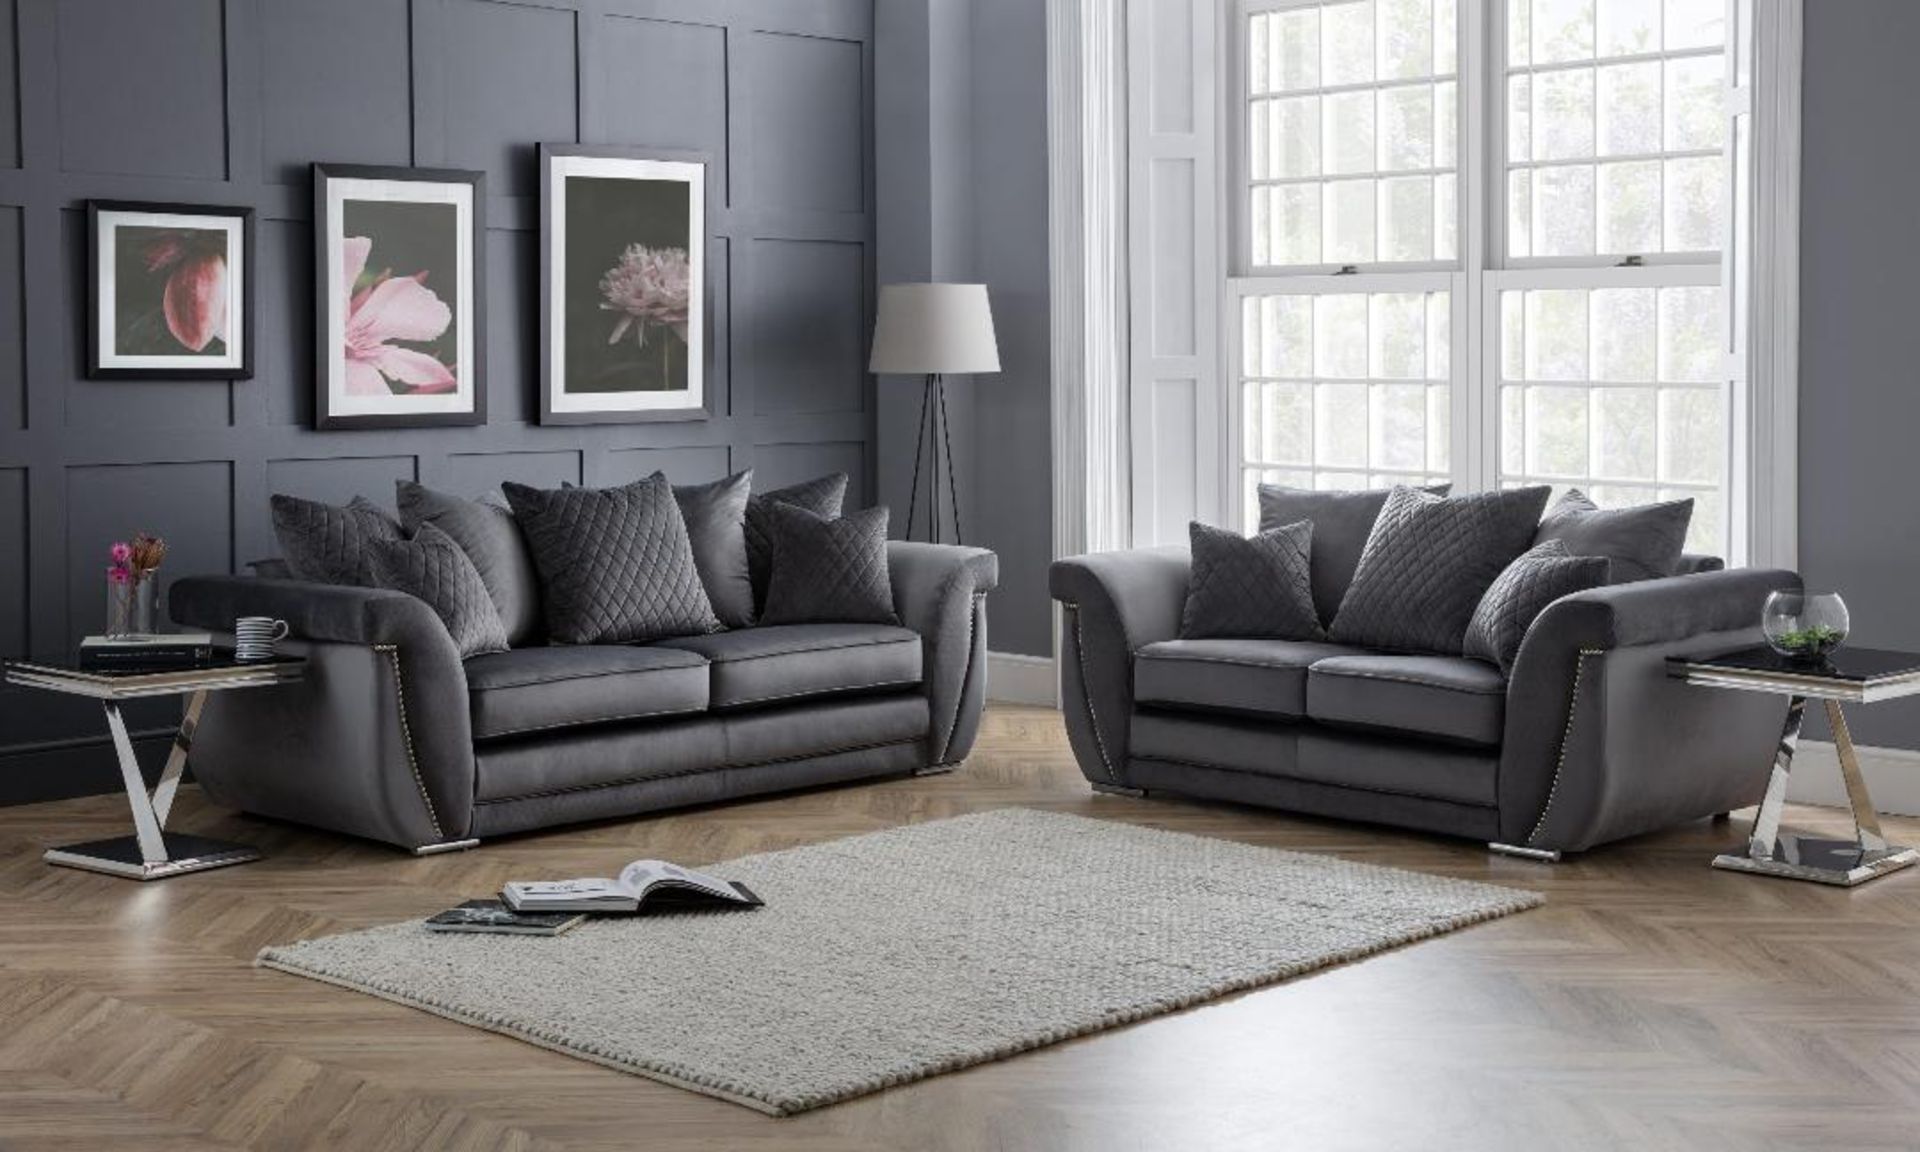 Brand new luxe 3 seater plus 2 seater fabric sofas in velvet titanium - Image 2 of 2